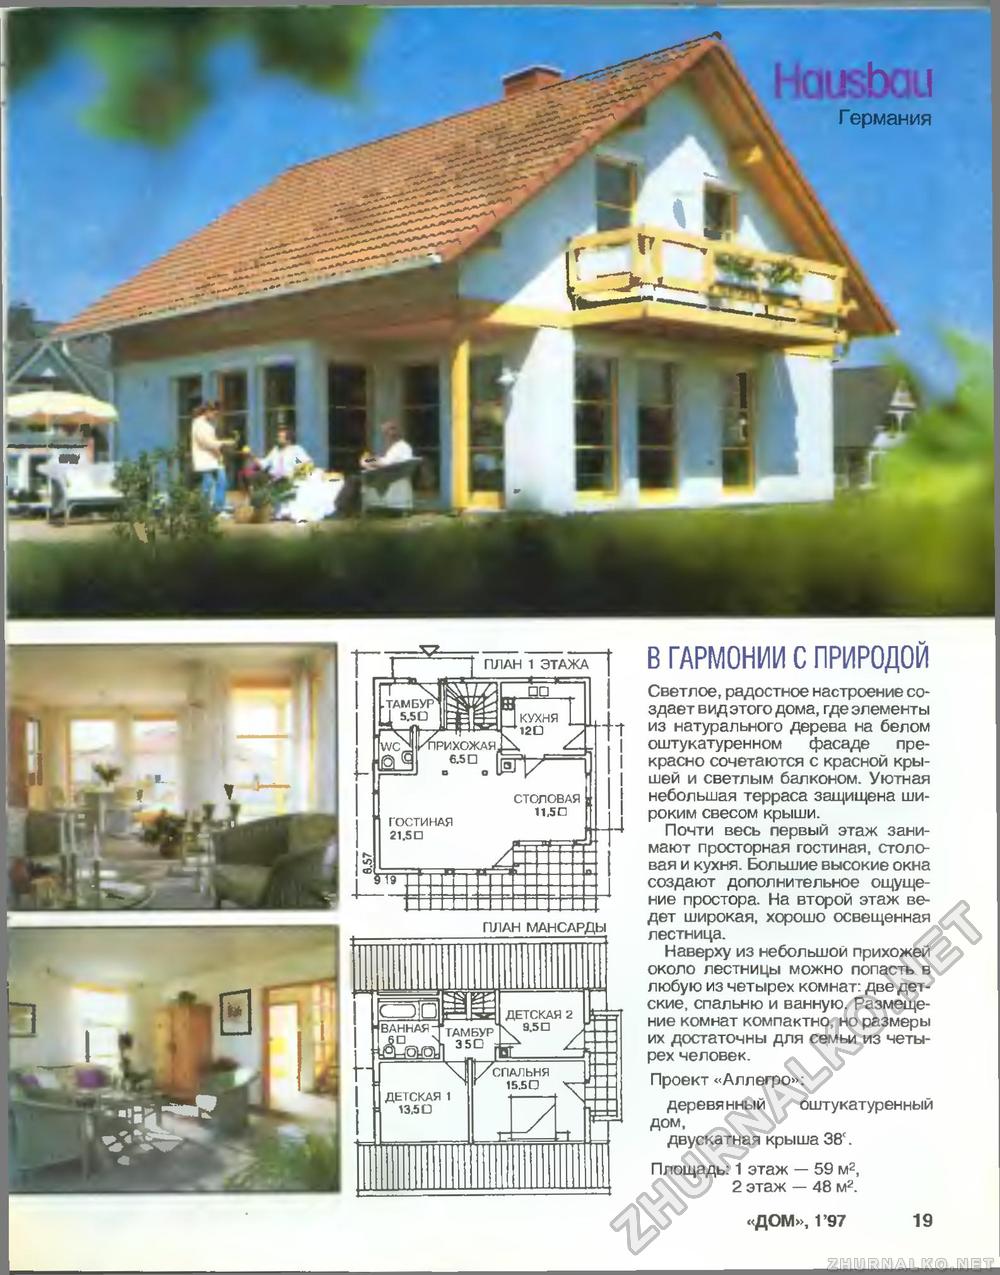 Дом 1997-01, страница 19